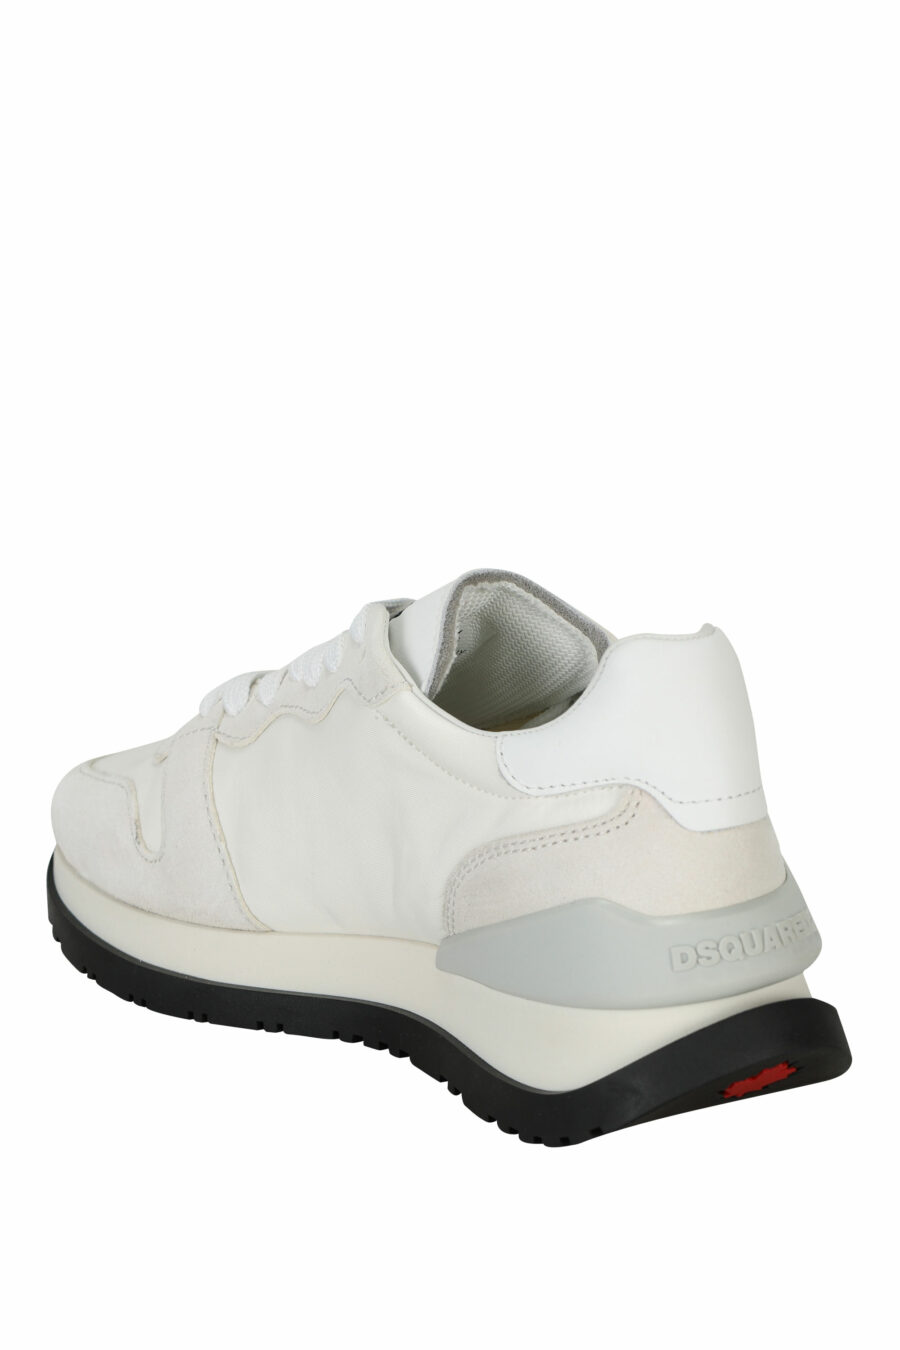 Zapatillas blancas con logo "icon darling" - 8055777310106 3